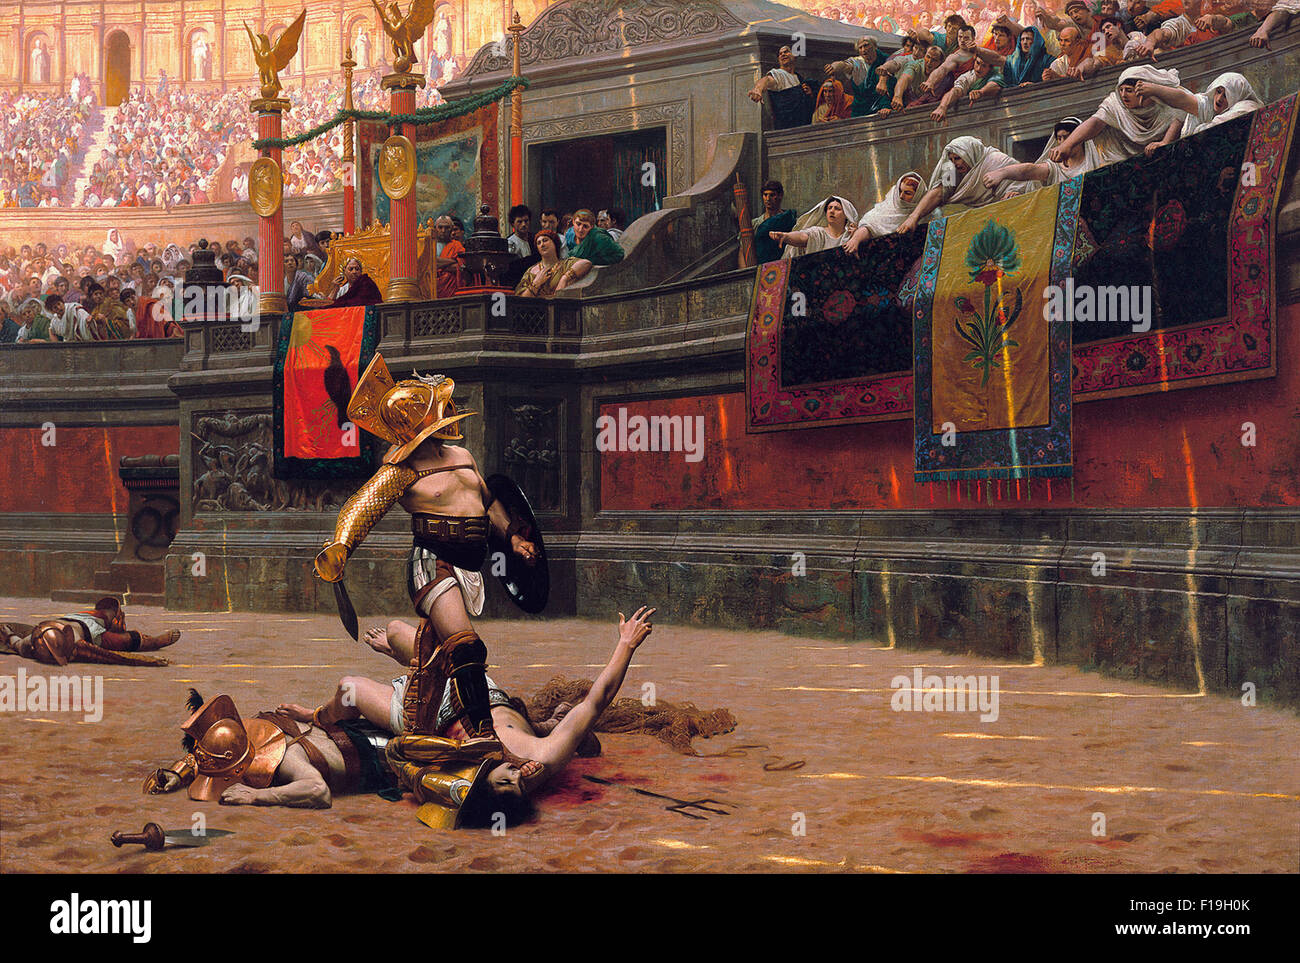 Pollice verso (1872), qui a popularisé le "geste" de pouce vers le bas. Huile sur toile. Un empereur romain dans le Colisée, le fameux geste de pouce vers le bas. Peinture de l'artiste Jean-Léon Gérôme. Banque D'Images